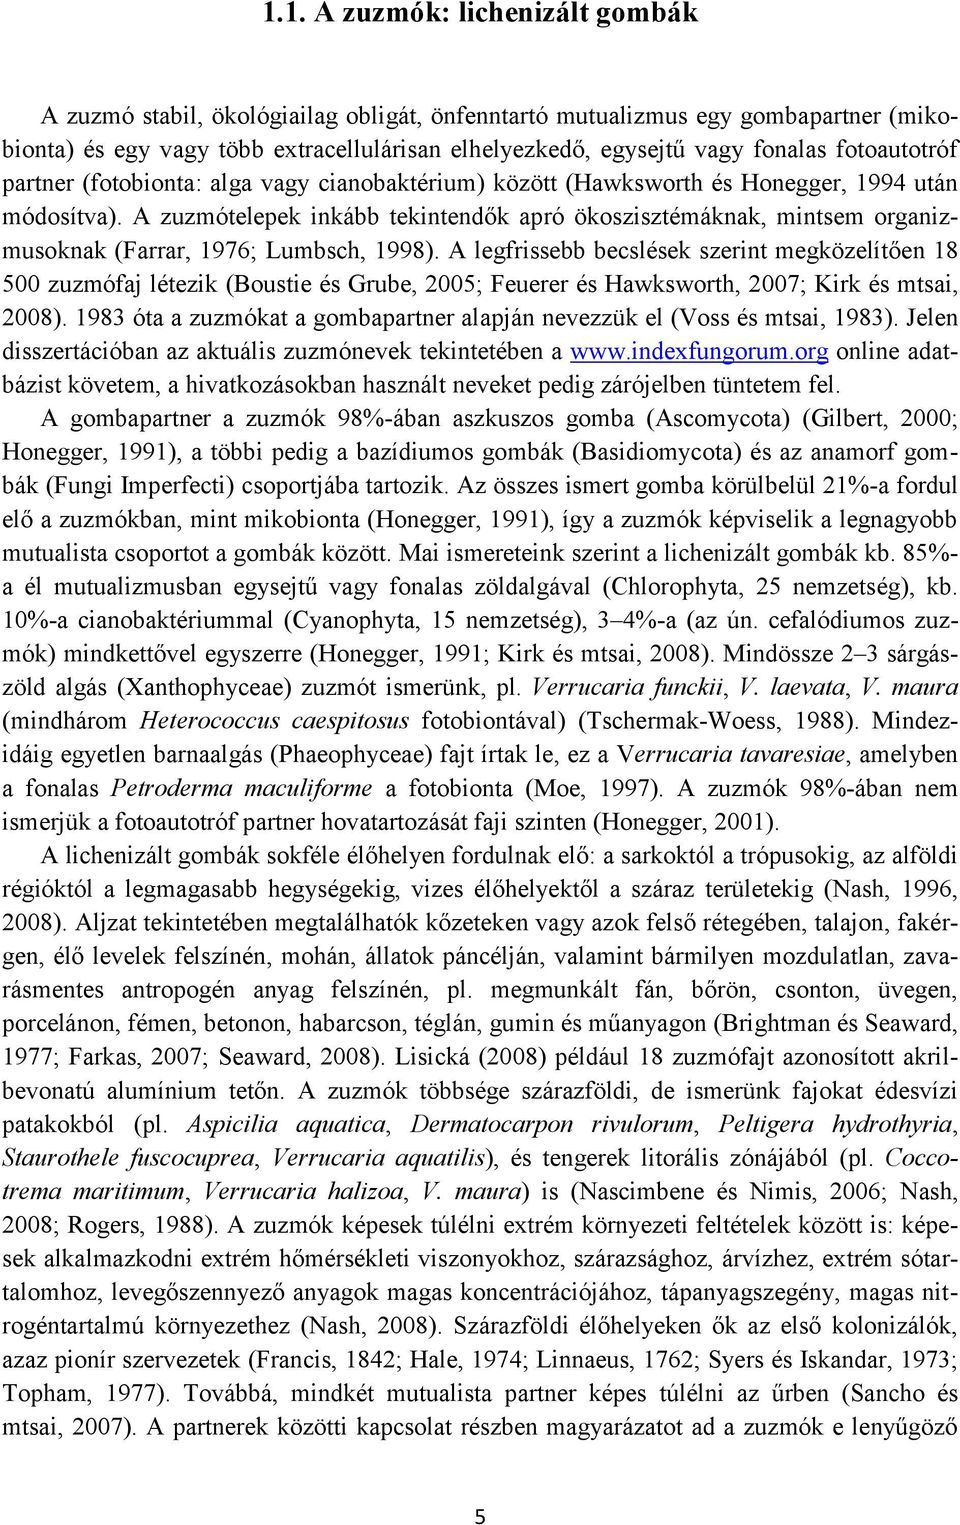 A zuzmótelepek inkább tekintendők apró ökoszisztémáknak, mintsem organizmusoknak (Farrar, 1976; Lumbsch, 1998).